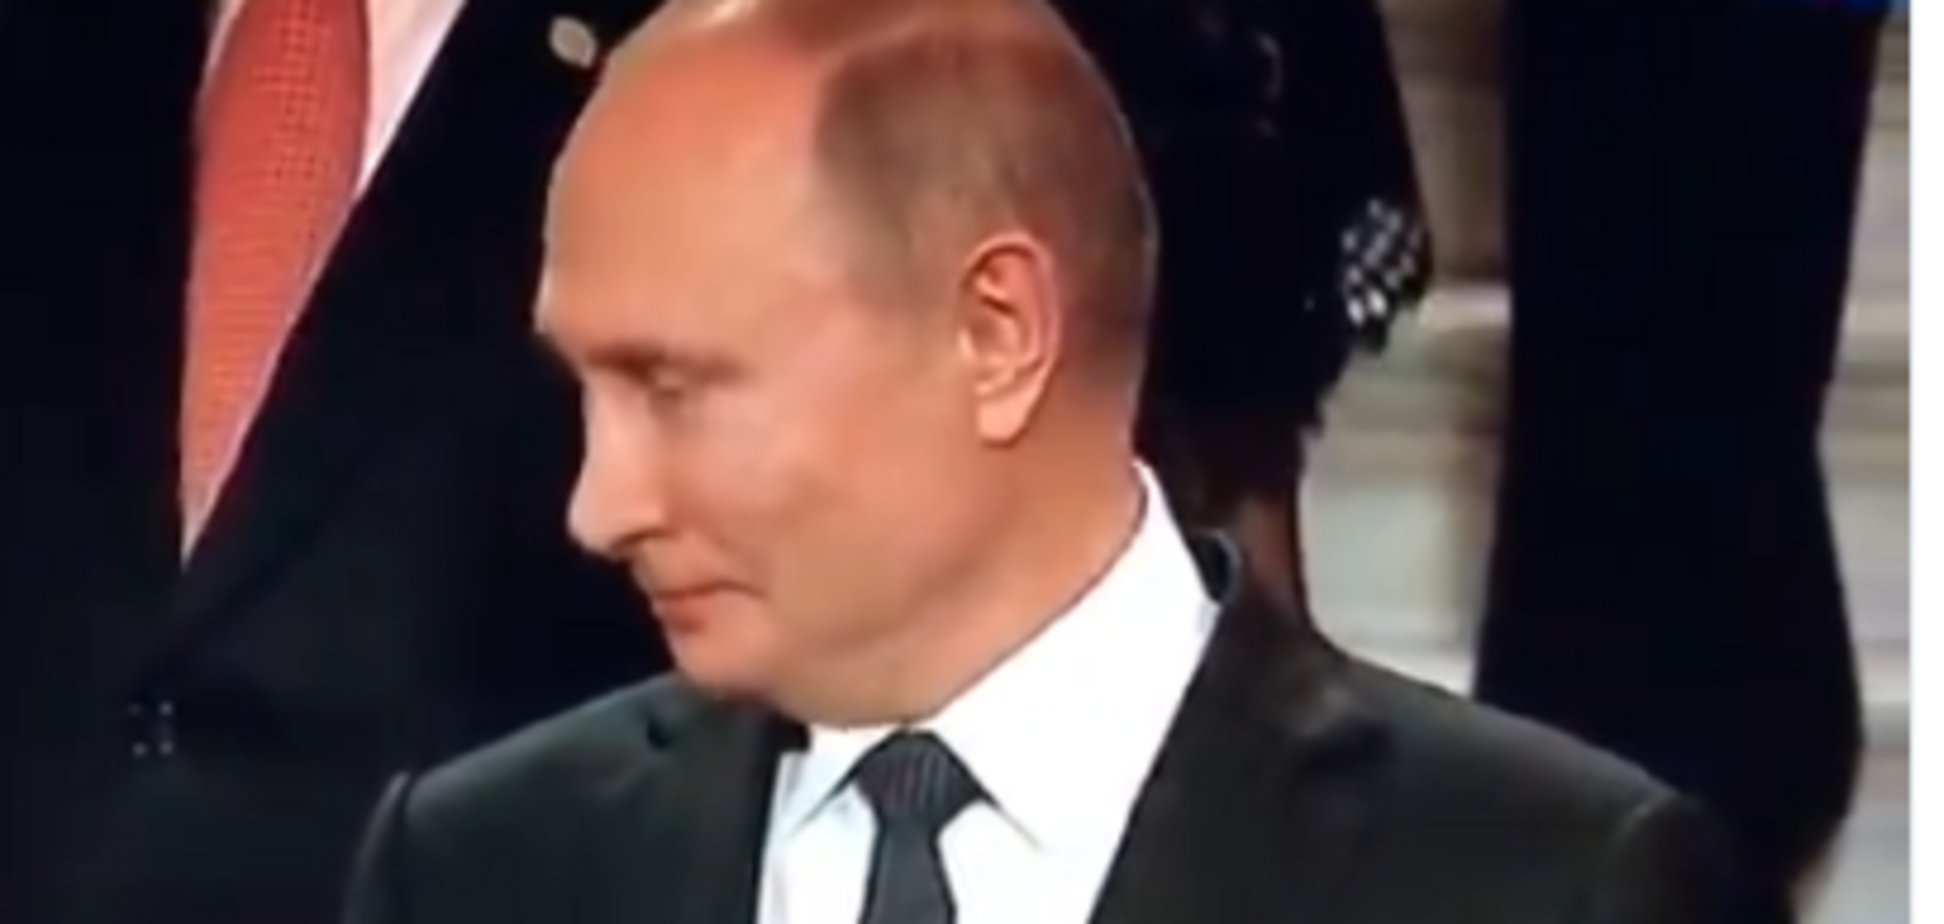 Не поздоровались-2: Трамп проигнорировал Путина во время фотографирования на G20